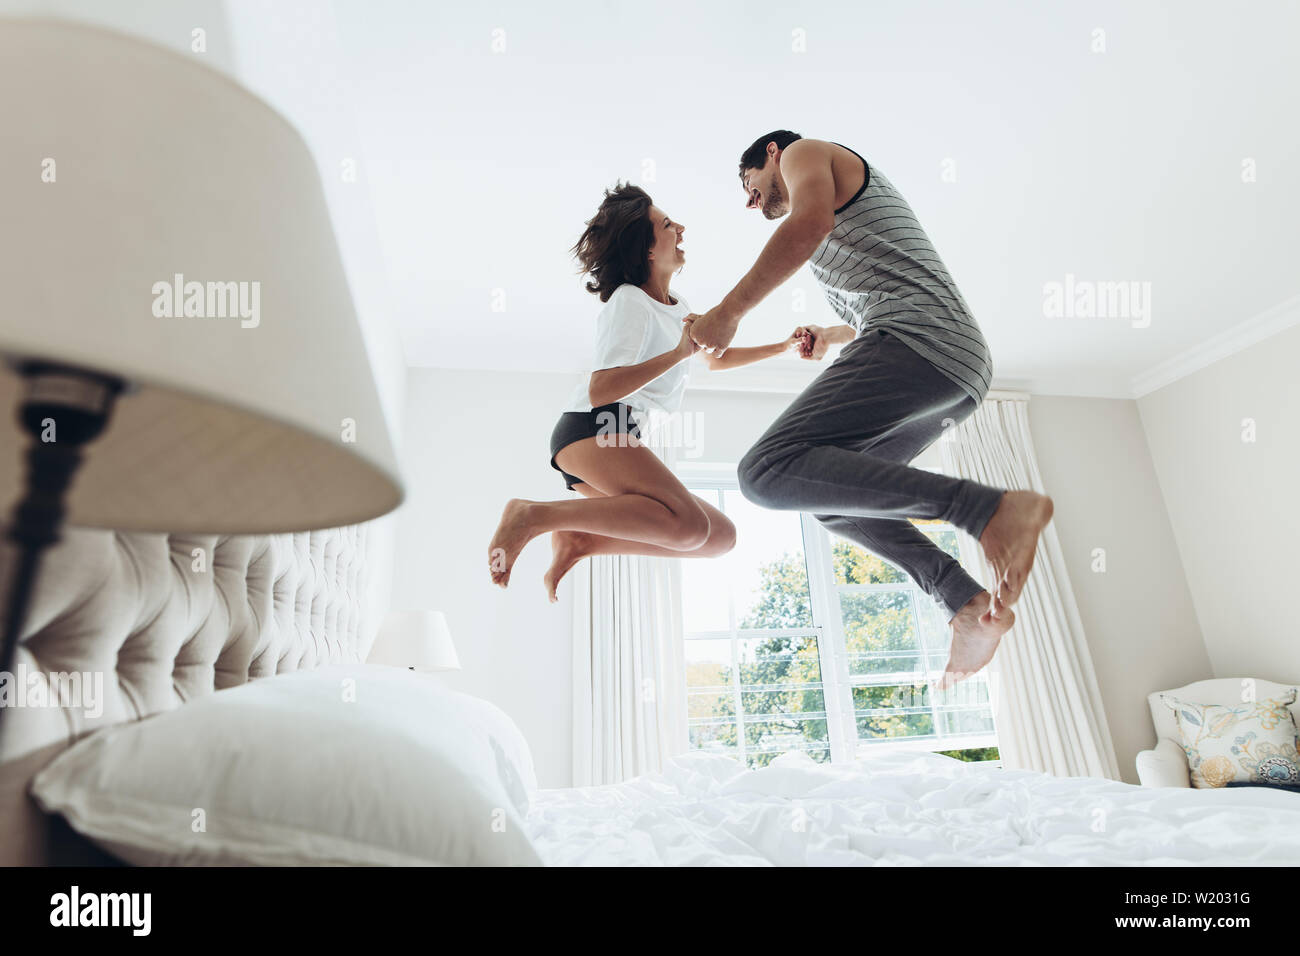 Mann und Frau halten sich an den Händen und springen auf dem Bett. Paar Spaß haben im Schlafzimmer. Stockfoto